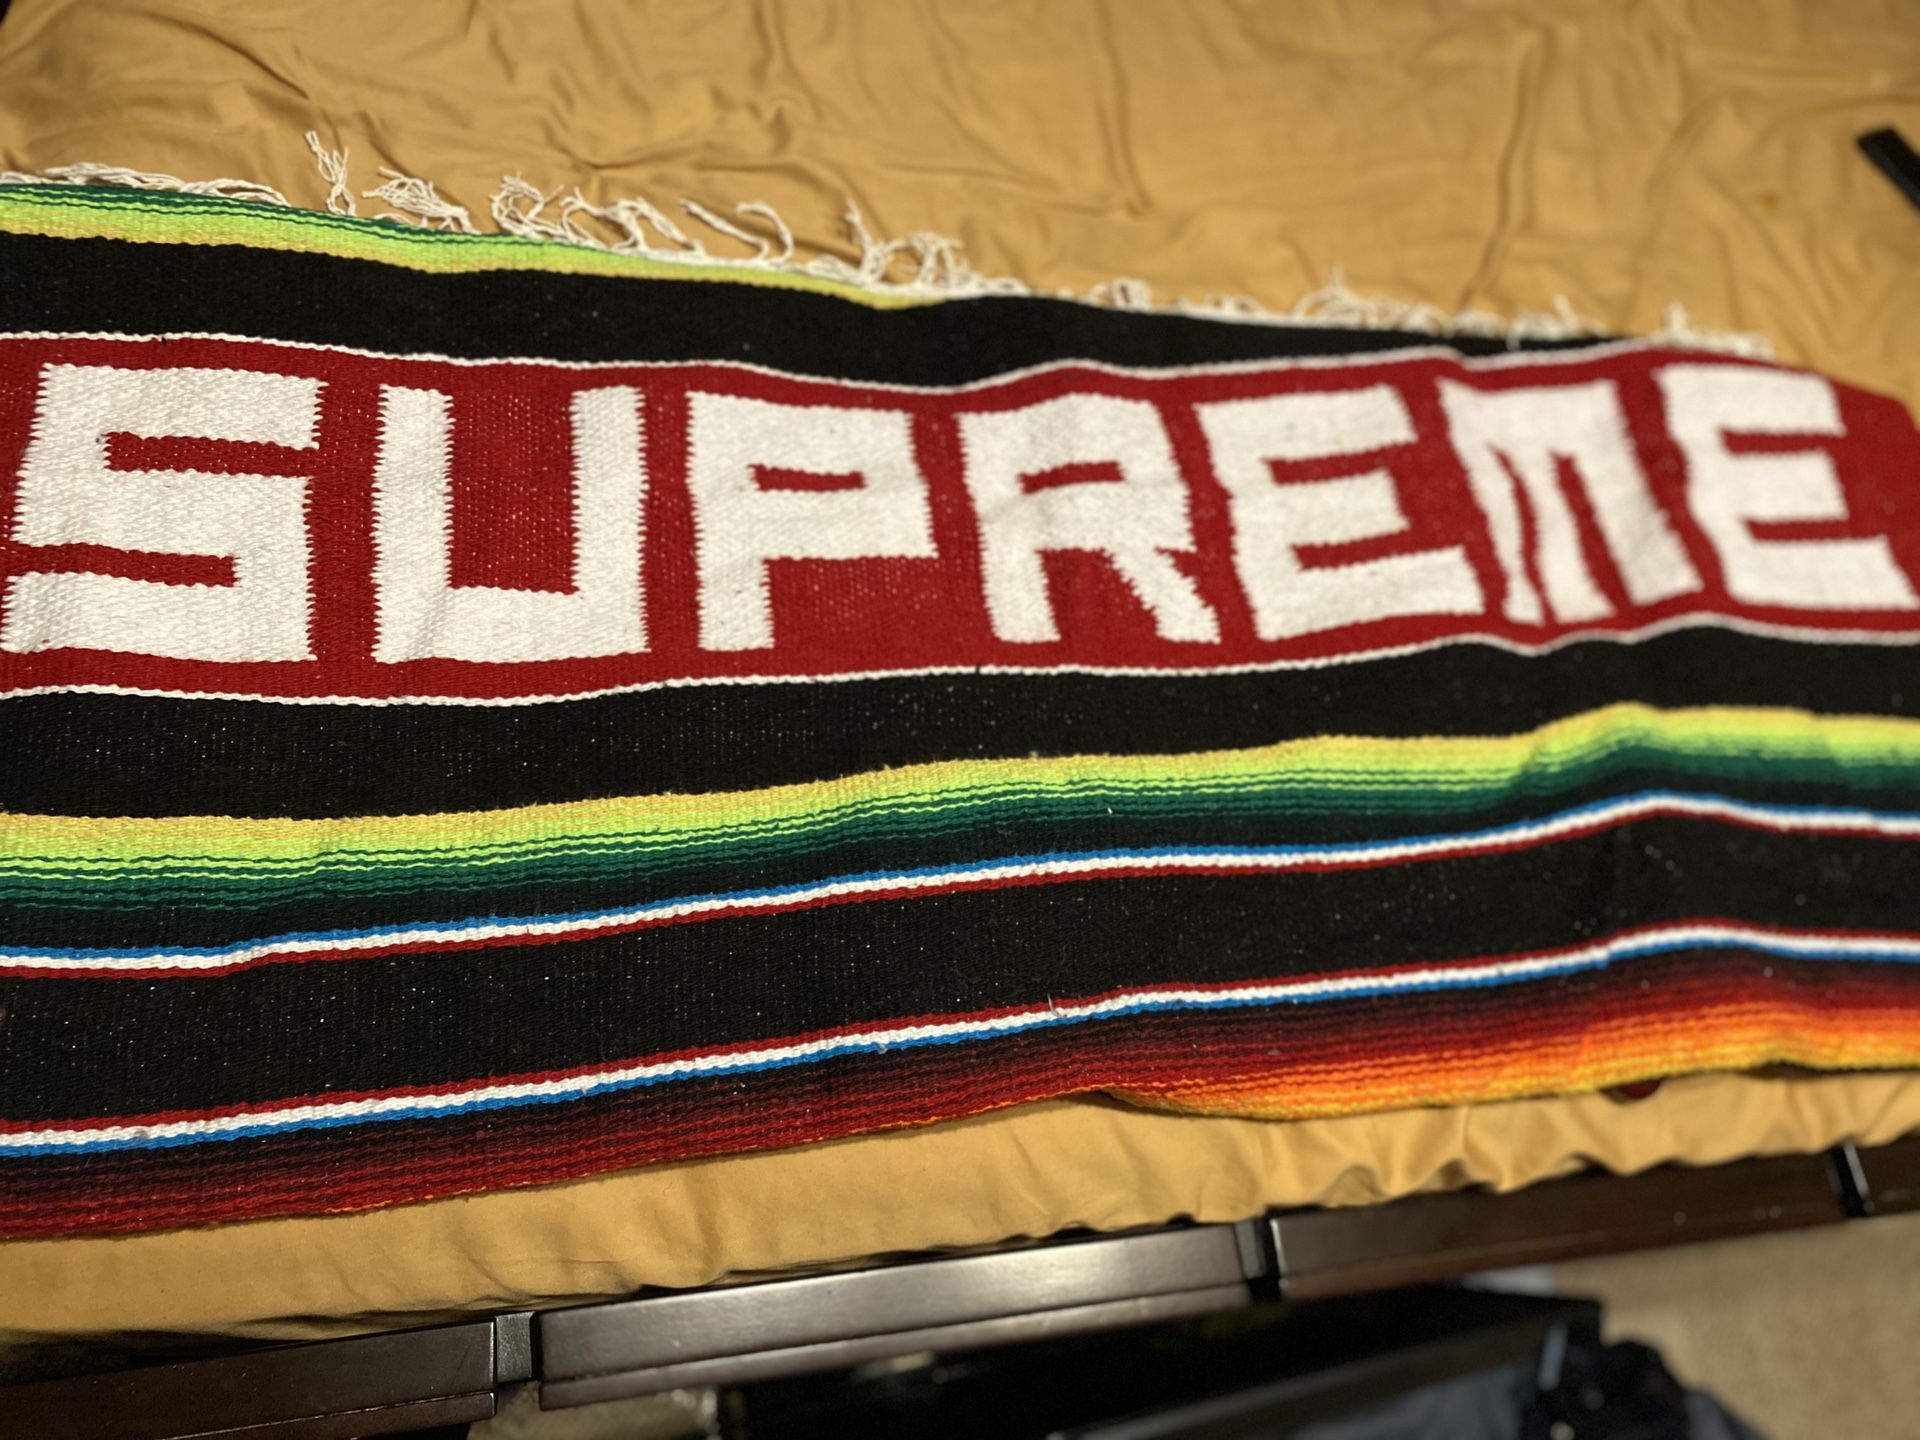 Supreme blanket